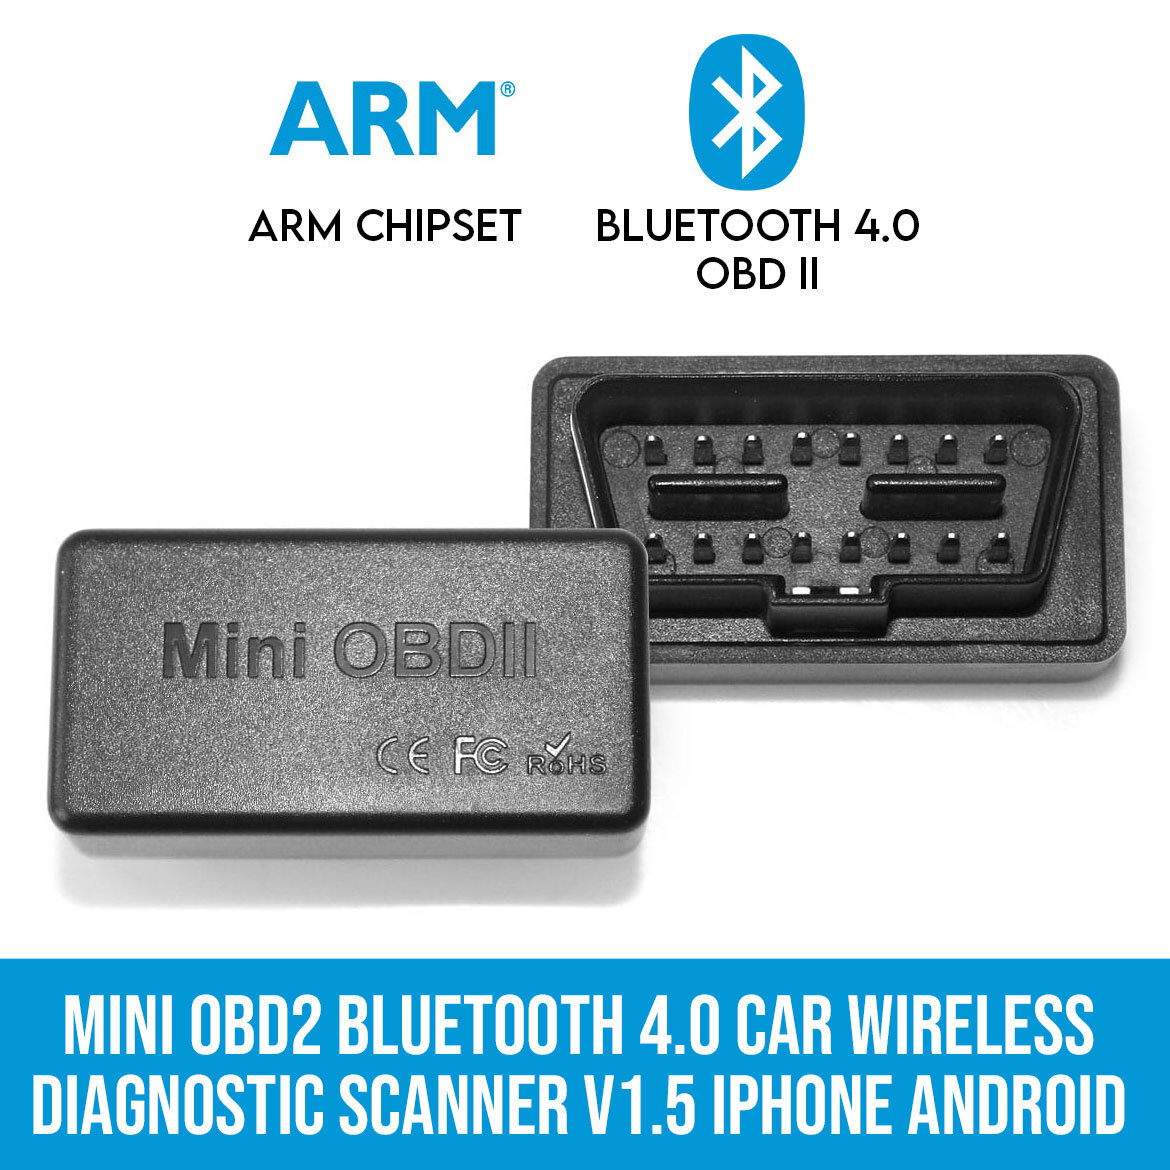 Experto Manuscrito Disgusto Mini OBD2 Bluetooth 4.0 Car Wireless Diagnostic Scanner V1.5 iPhone Android